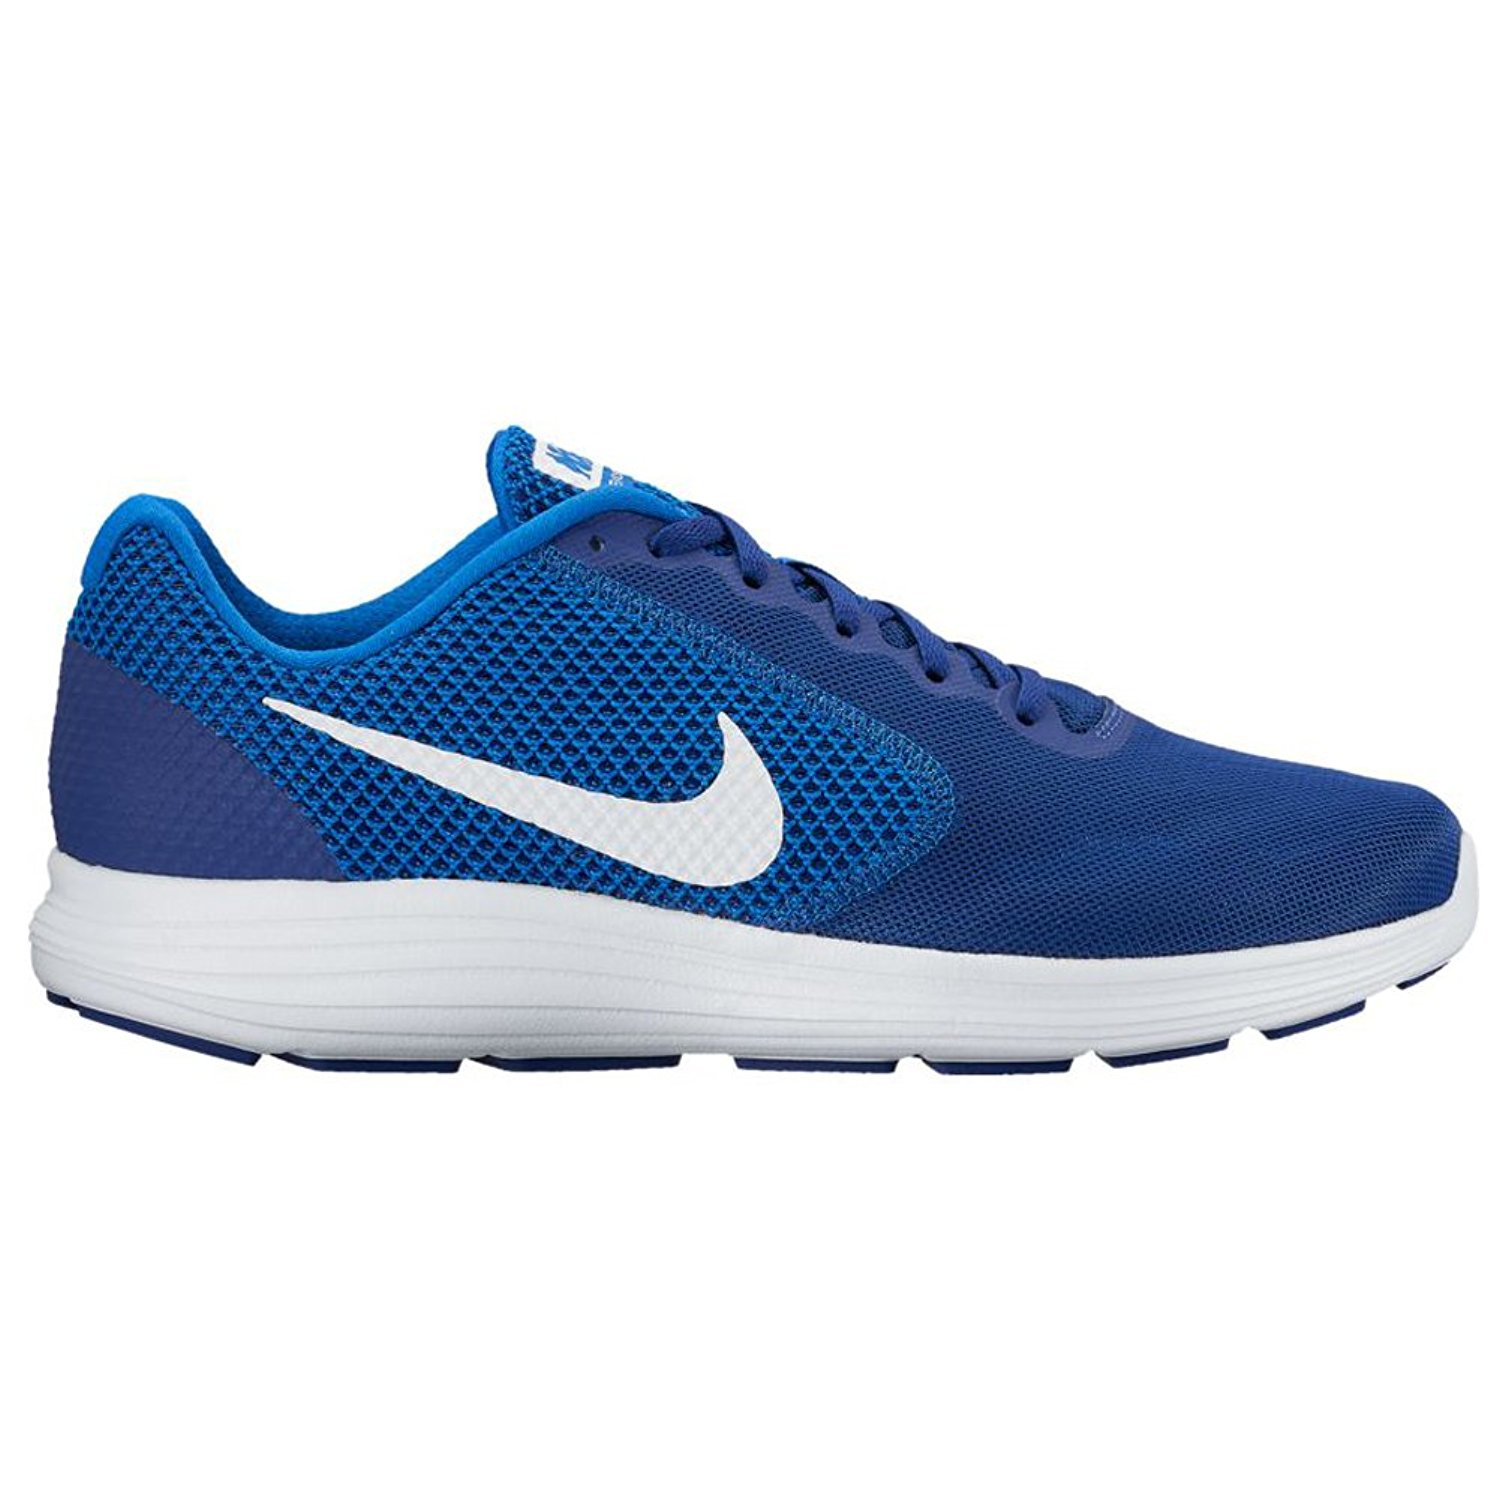 Buy Nike Men'S Revolution 3 Blue Running Shoes Online @ ₹3695 from ...